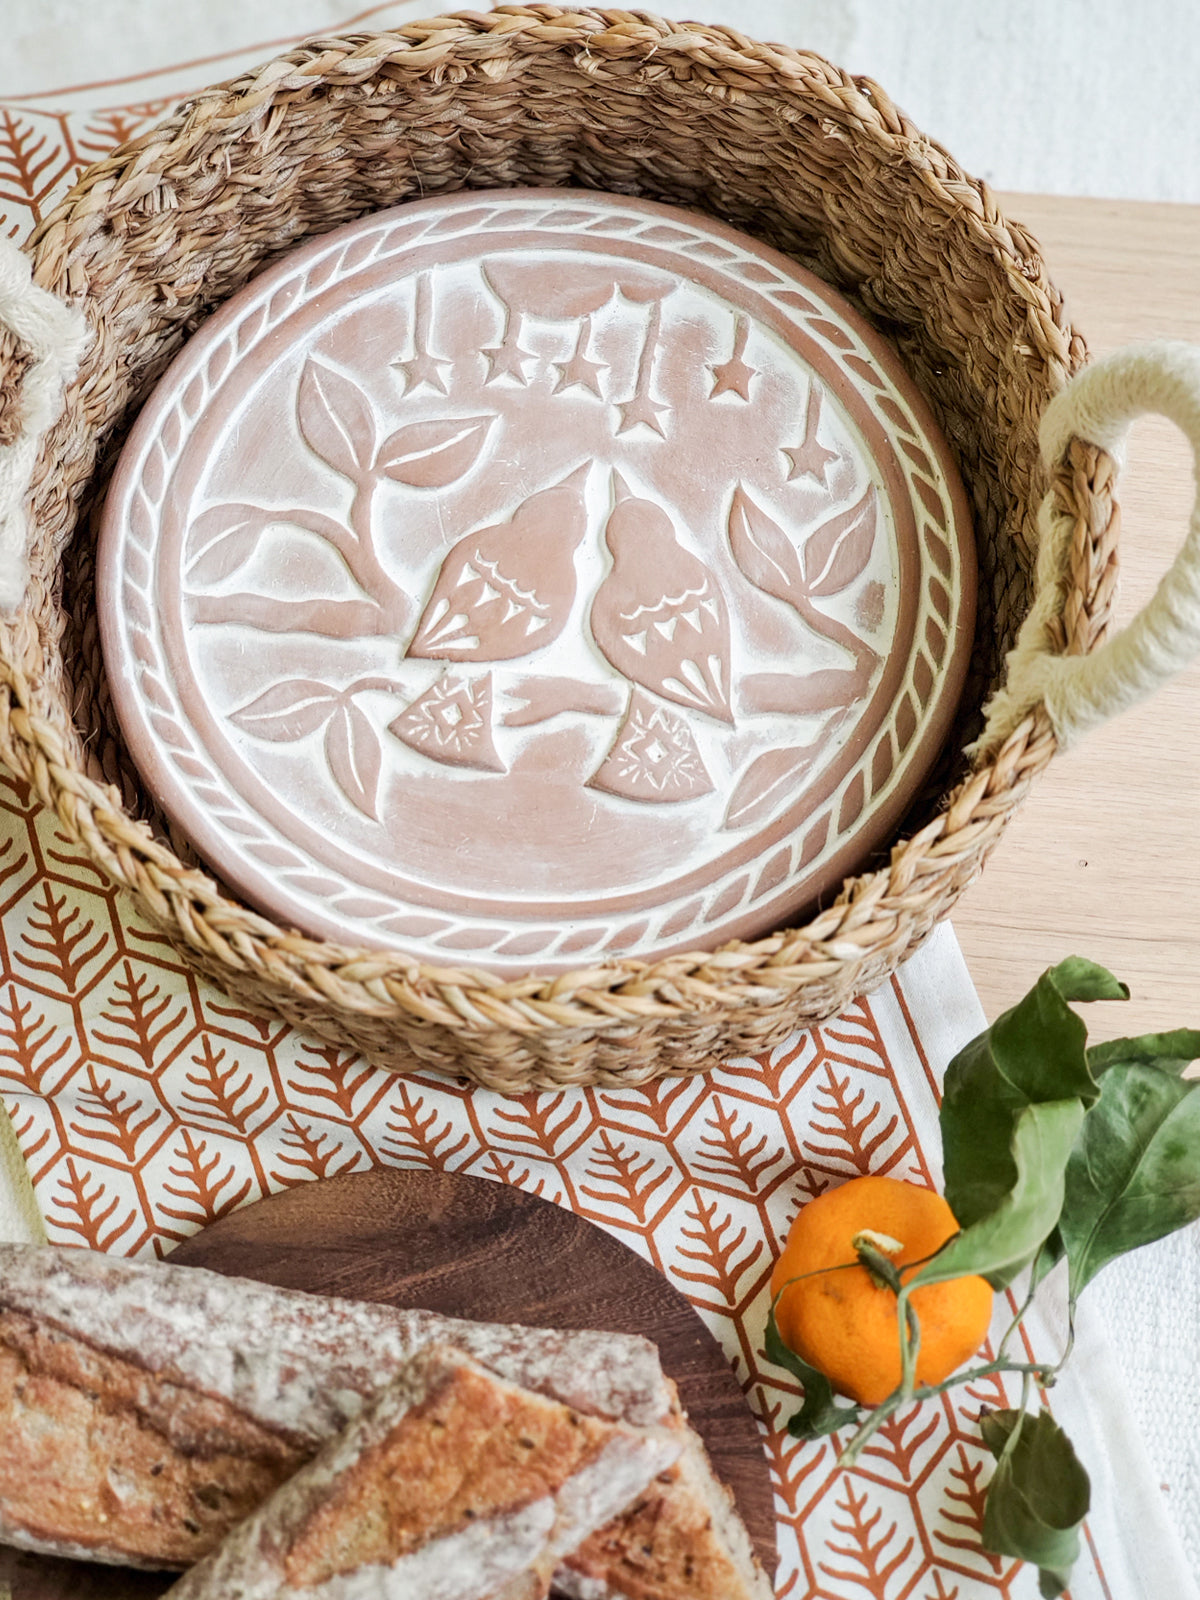 
                  
                    Bread Warmer & Basket Gift Set with Tea Towel - Lovebird Round by KORISSA
                  
                